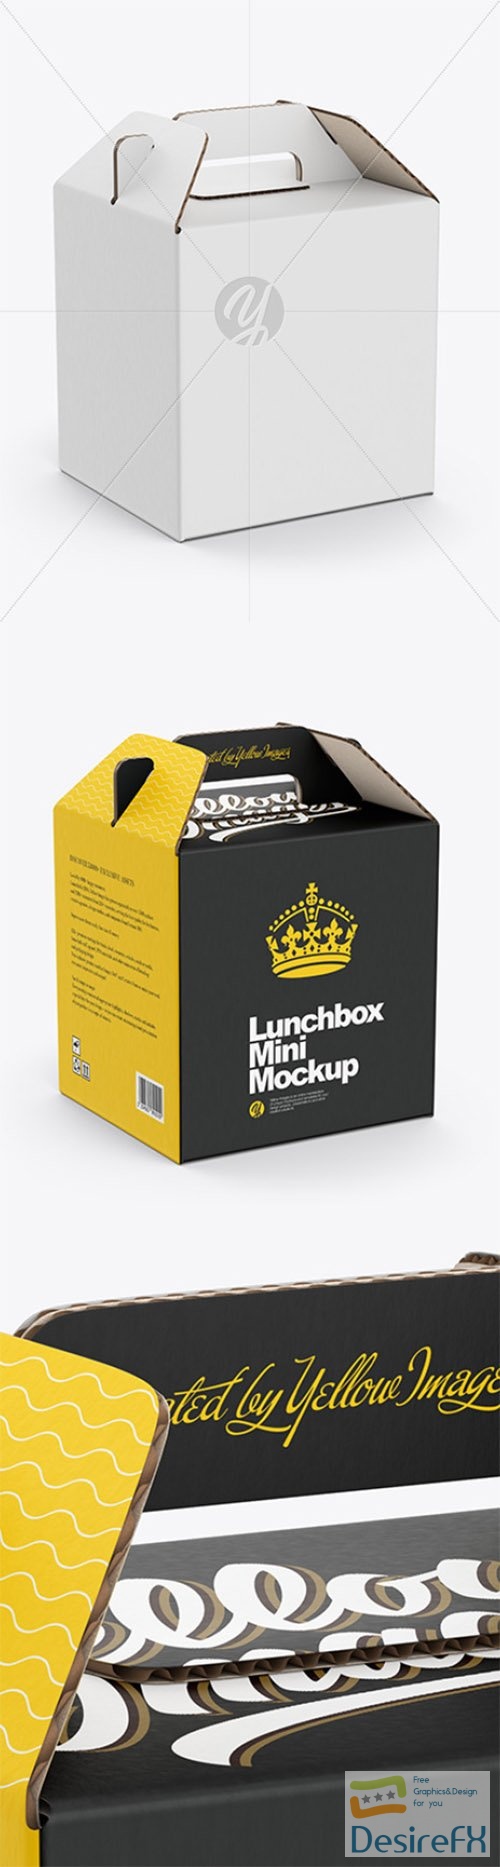 Lunchbox Mini Mockup 83295 TIF